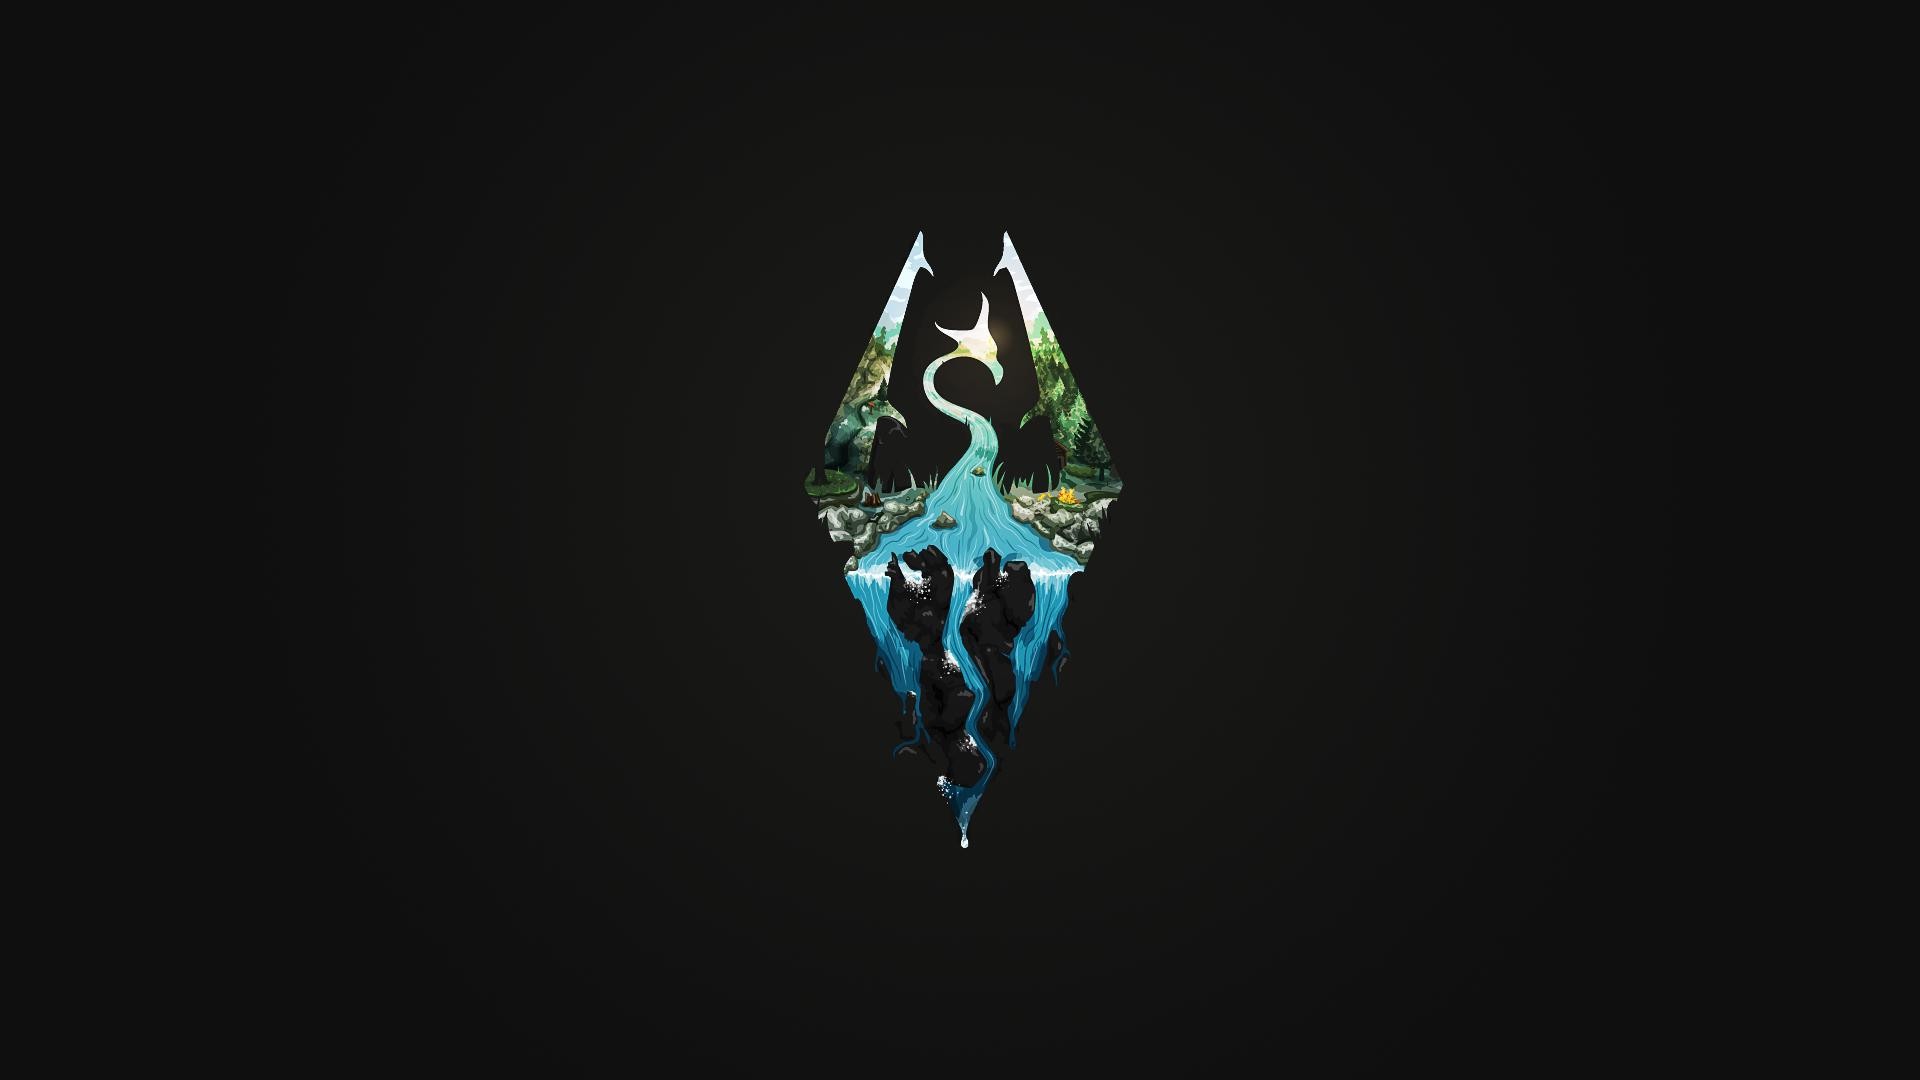 logo, The Elder Scrolls V: Skyrim, Video Games, Minimalism Wallpaper HD / Desktop and Mobile Background